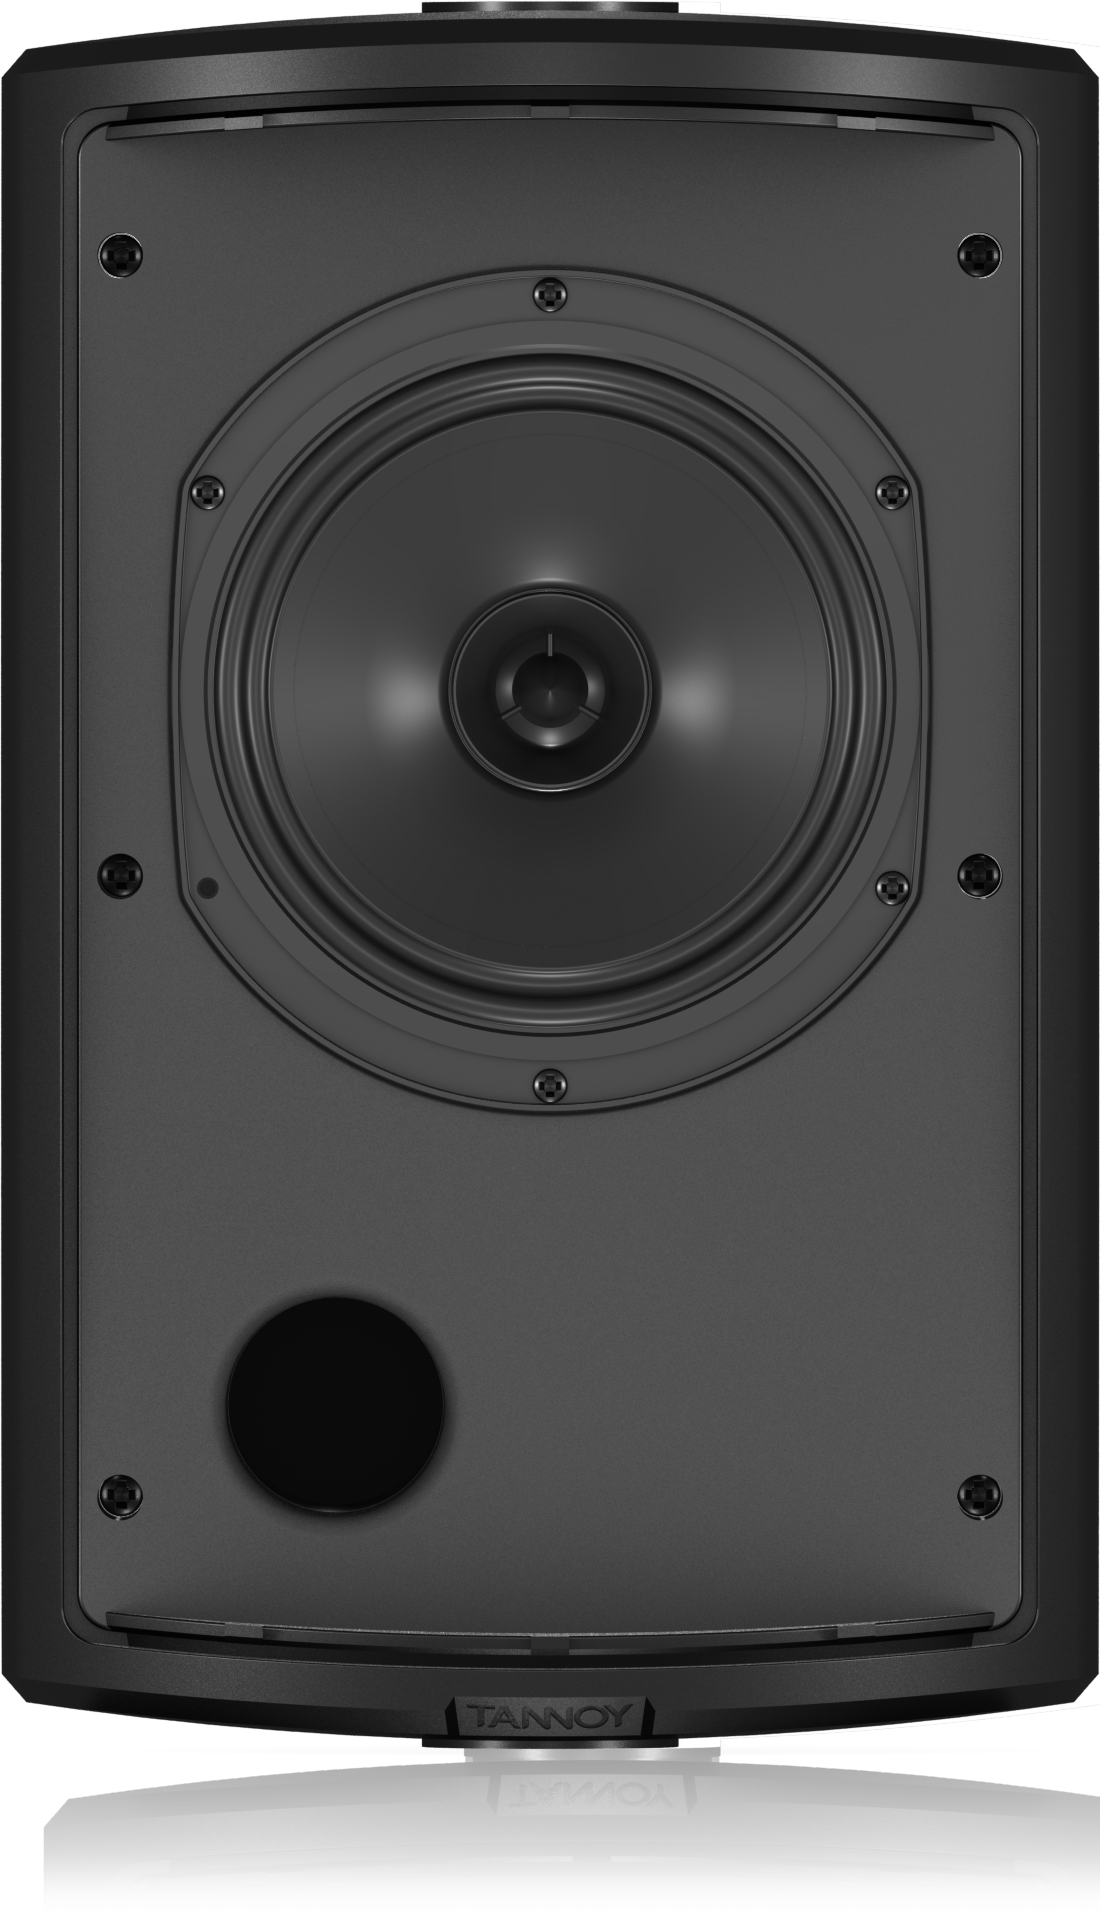 tannoy dual concentric speaker